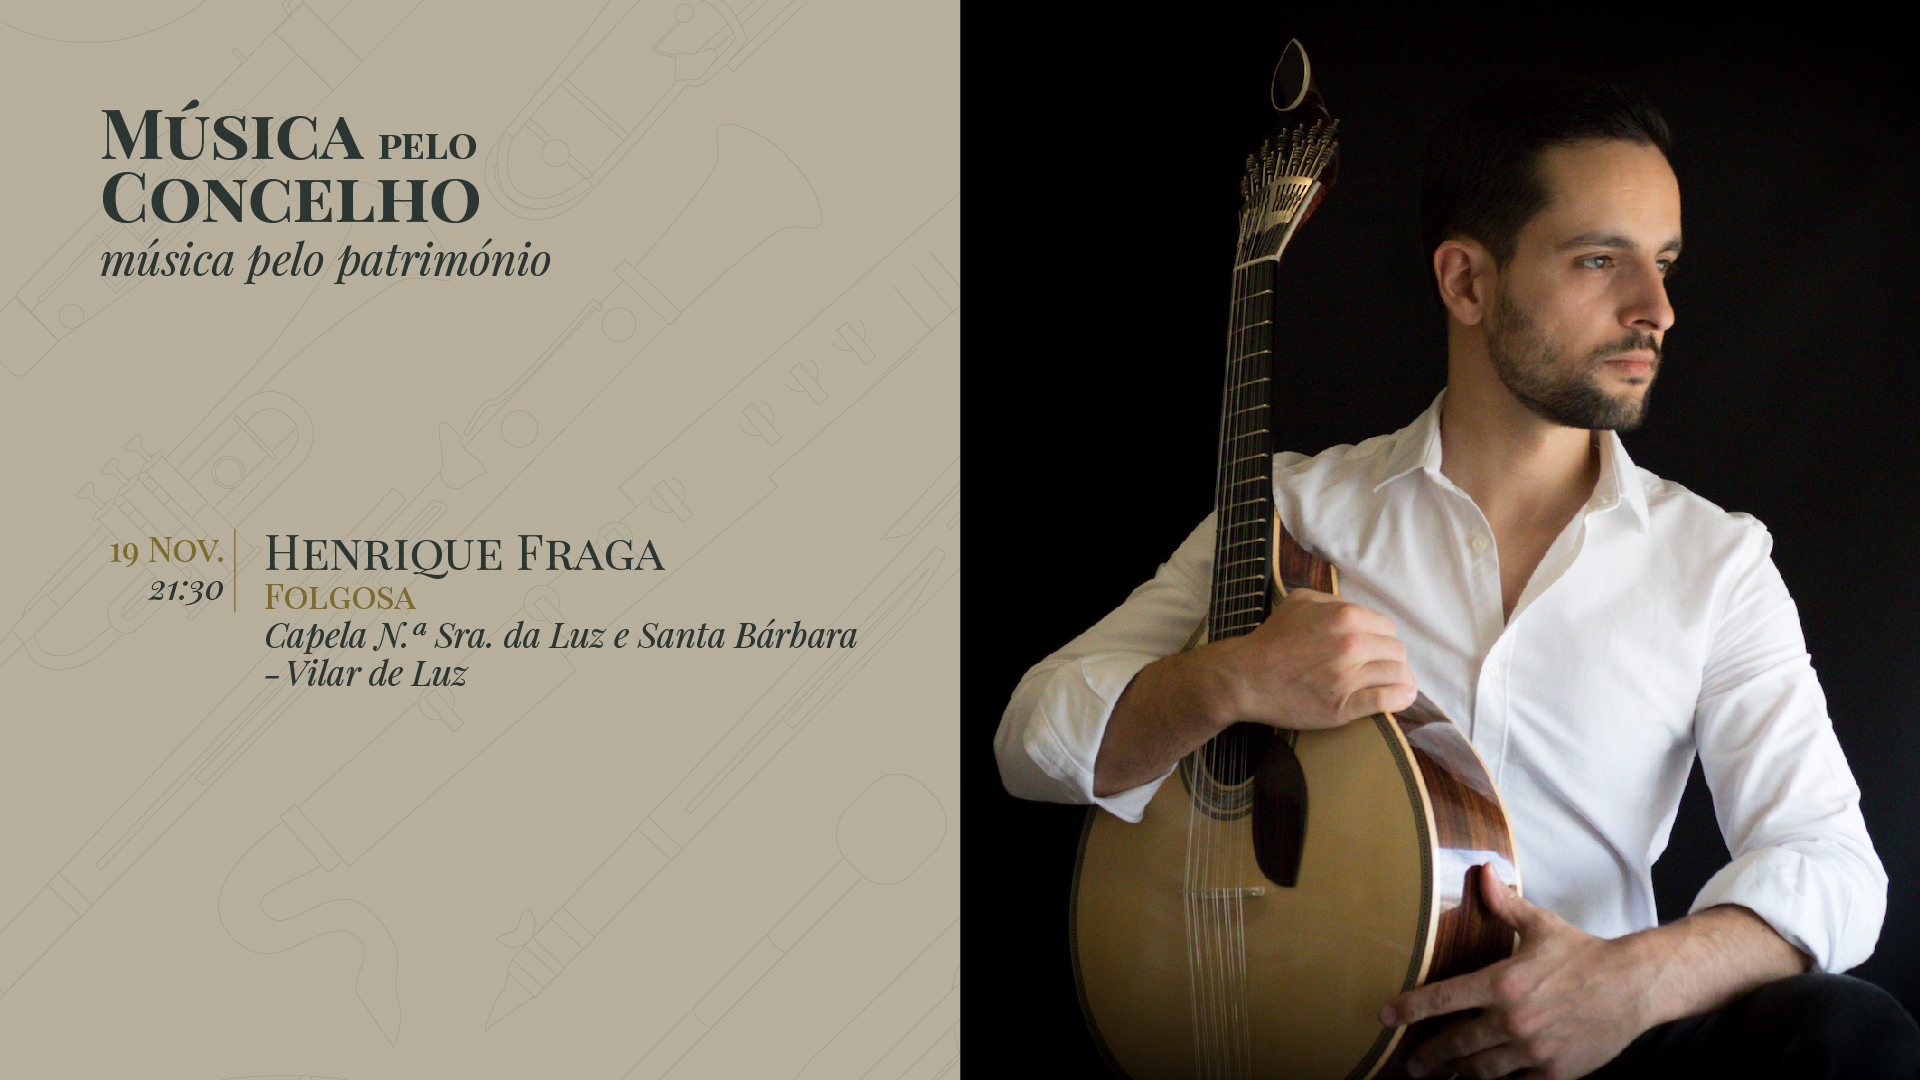 Henrique Fraga, Guitarra de Coimbra - Música Pelo Concelho, Música Pelo Património